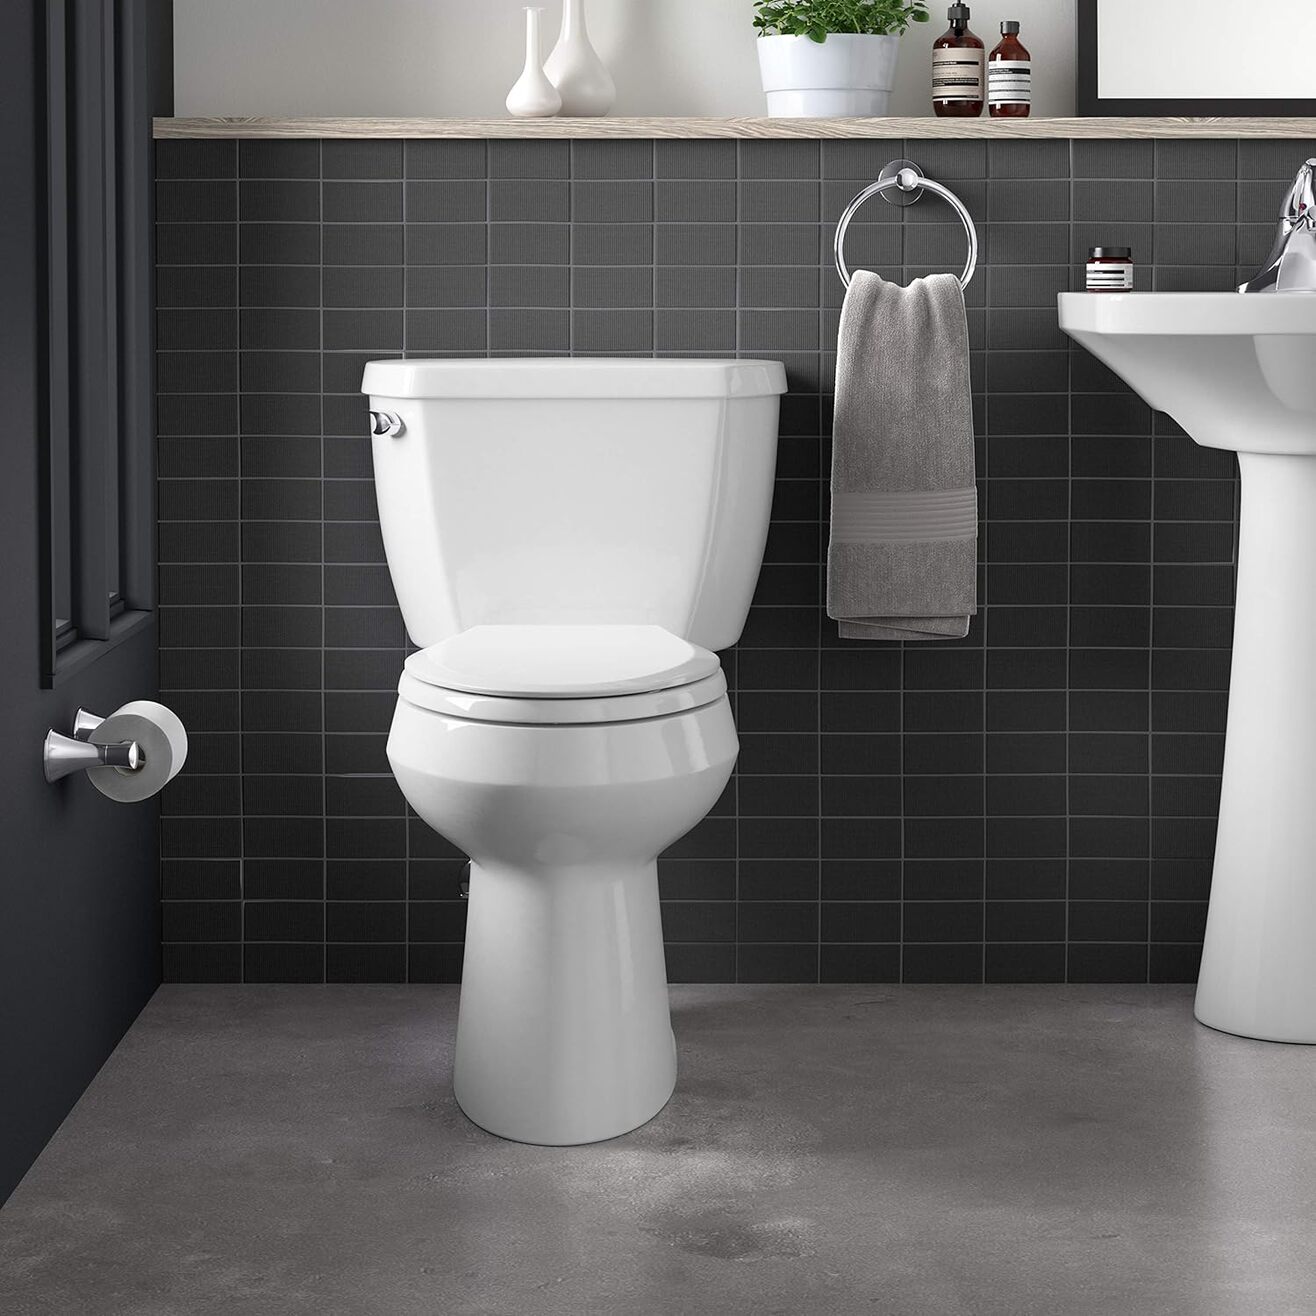 Kohler-Highline-Toilet-Review-Comfort-Height-Elongated-Toilet-TN